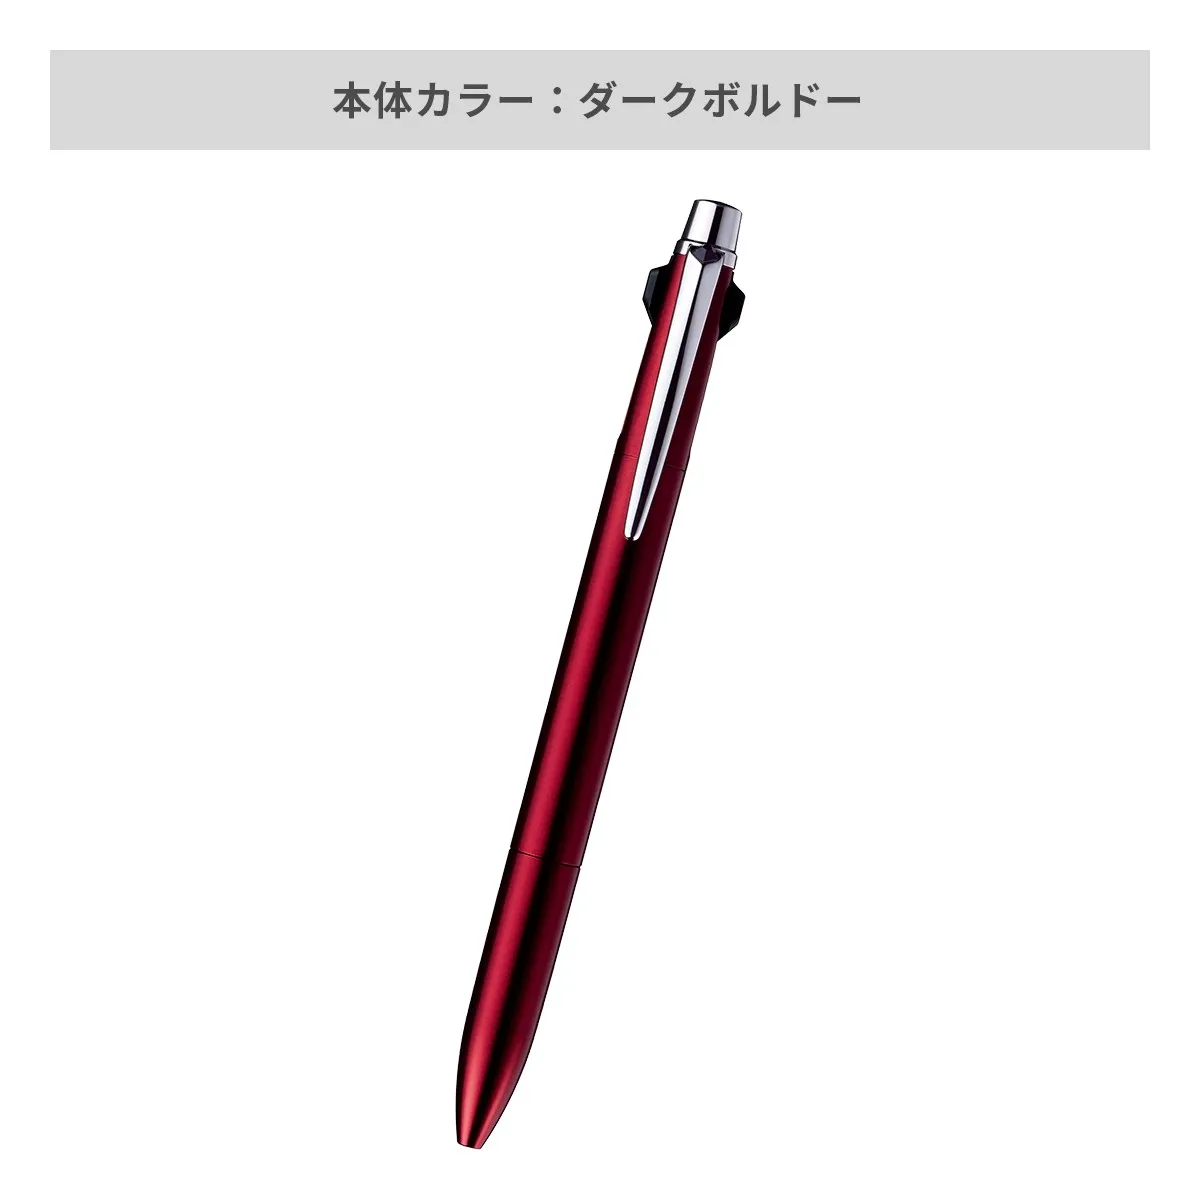 【短納期】三菱鉛筆 ジェットストリーム プライム 3色ボールペン 0.5mm【名入れボールペン / レーザー彫刻】 画像5